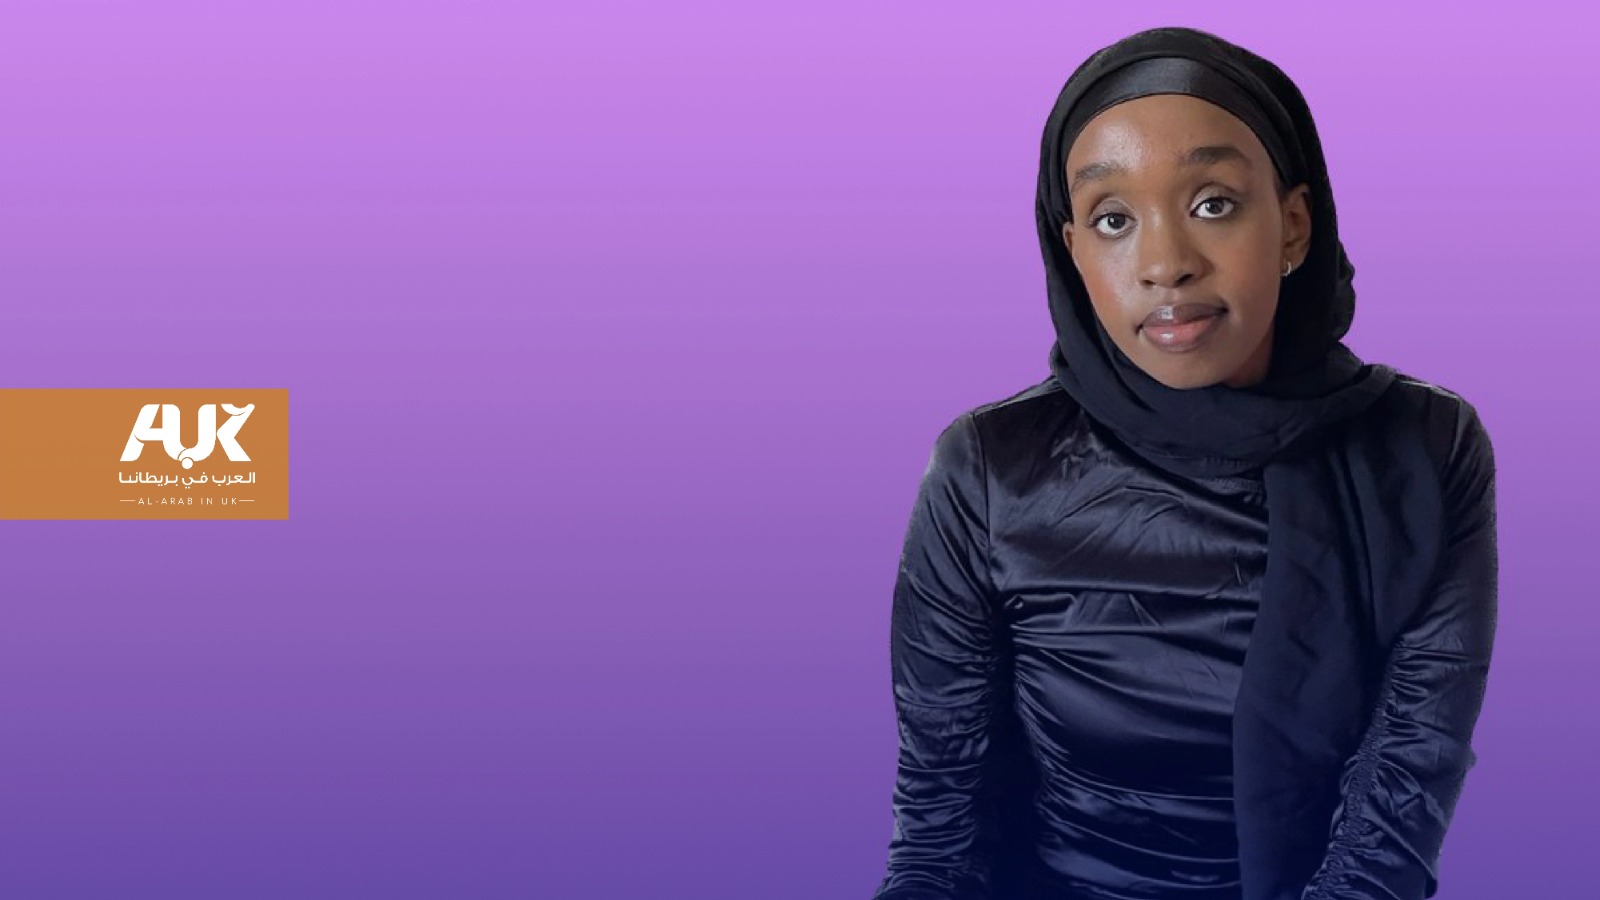 لصومالية سابرينا علي تفوز بجائزة الكتابة المسرحية في أدنبرة